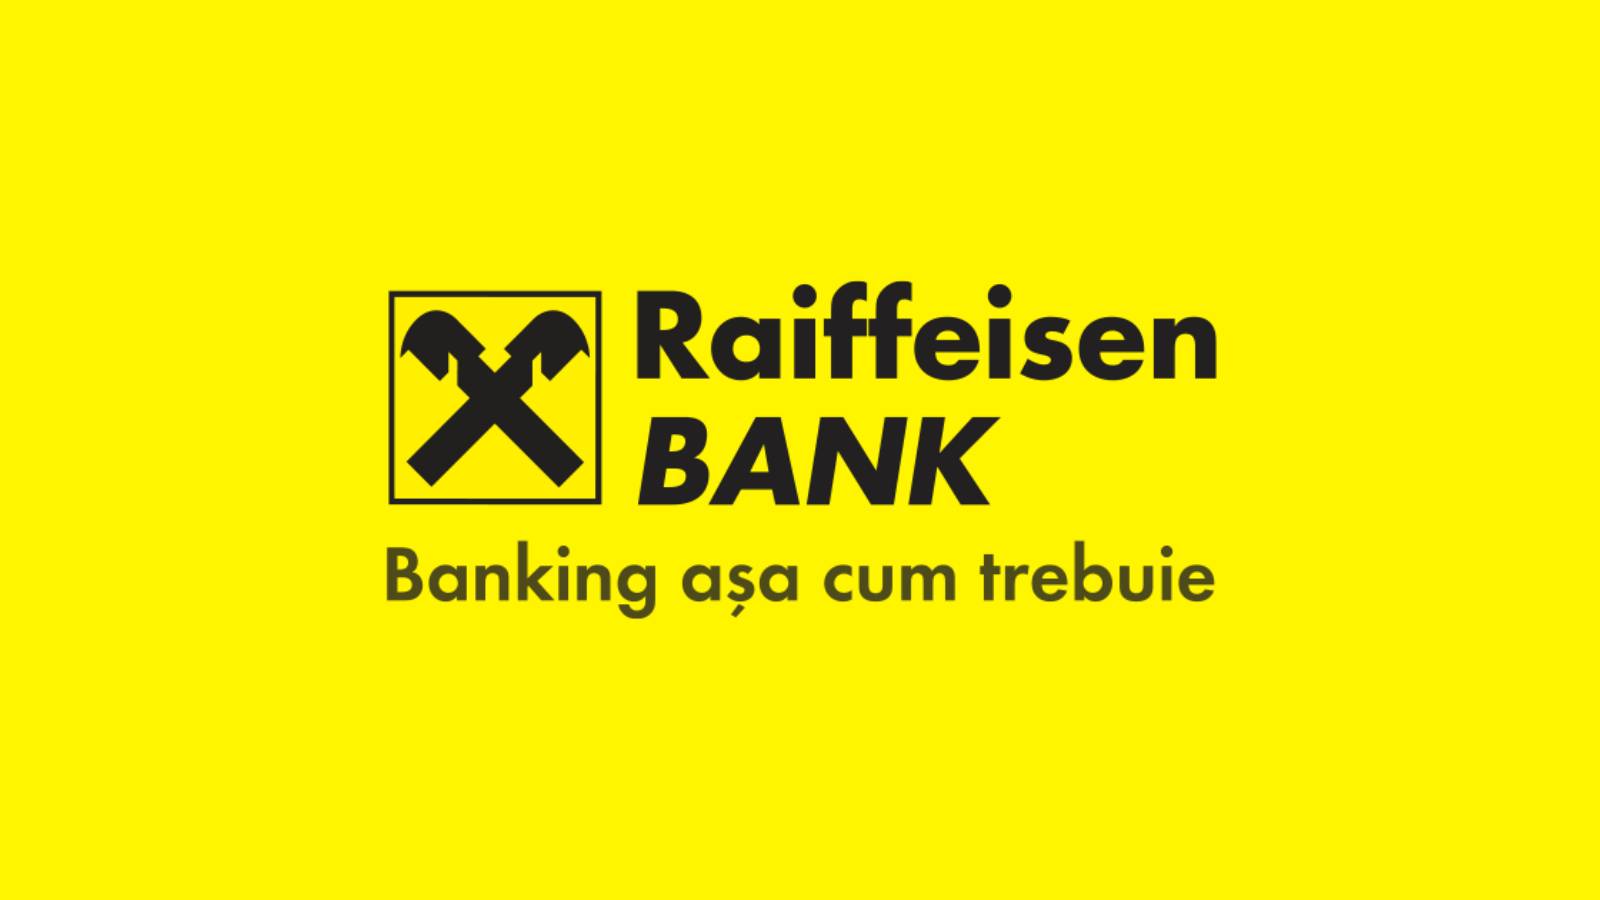 Coche del banco Raiffeisen